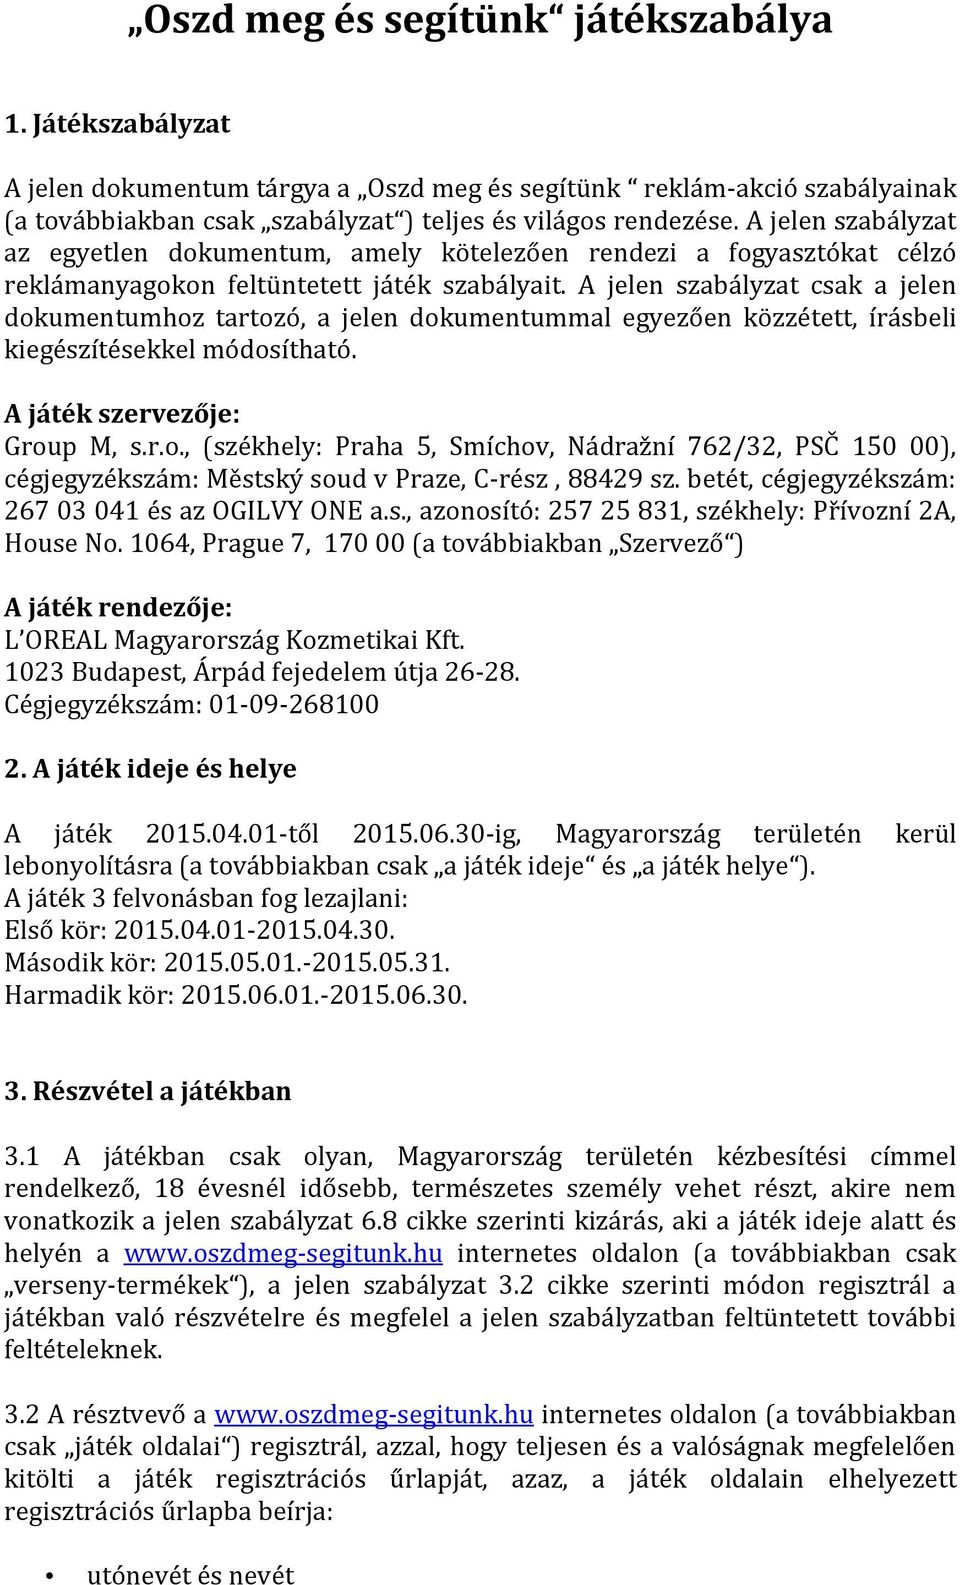 A jelen szabályzat csak a jelen dokumentumhoz tartozó, a jelen dokumentummal egyezően közzétett, írásbeli kiegészítésekkel módosítható. A játék szervezője: Group M, s.r.o., (székhely: Praha 5, Smíchov, Nádražní 762/32, PSČ 150 00), cégjegyzékszám: Městský soud v Praze, C-rész, 88429 sz.